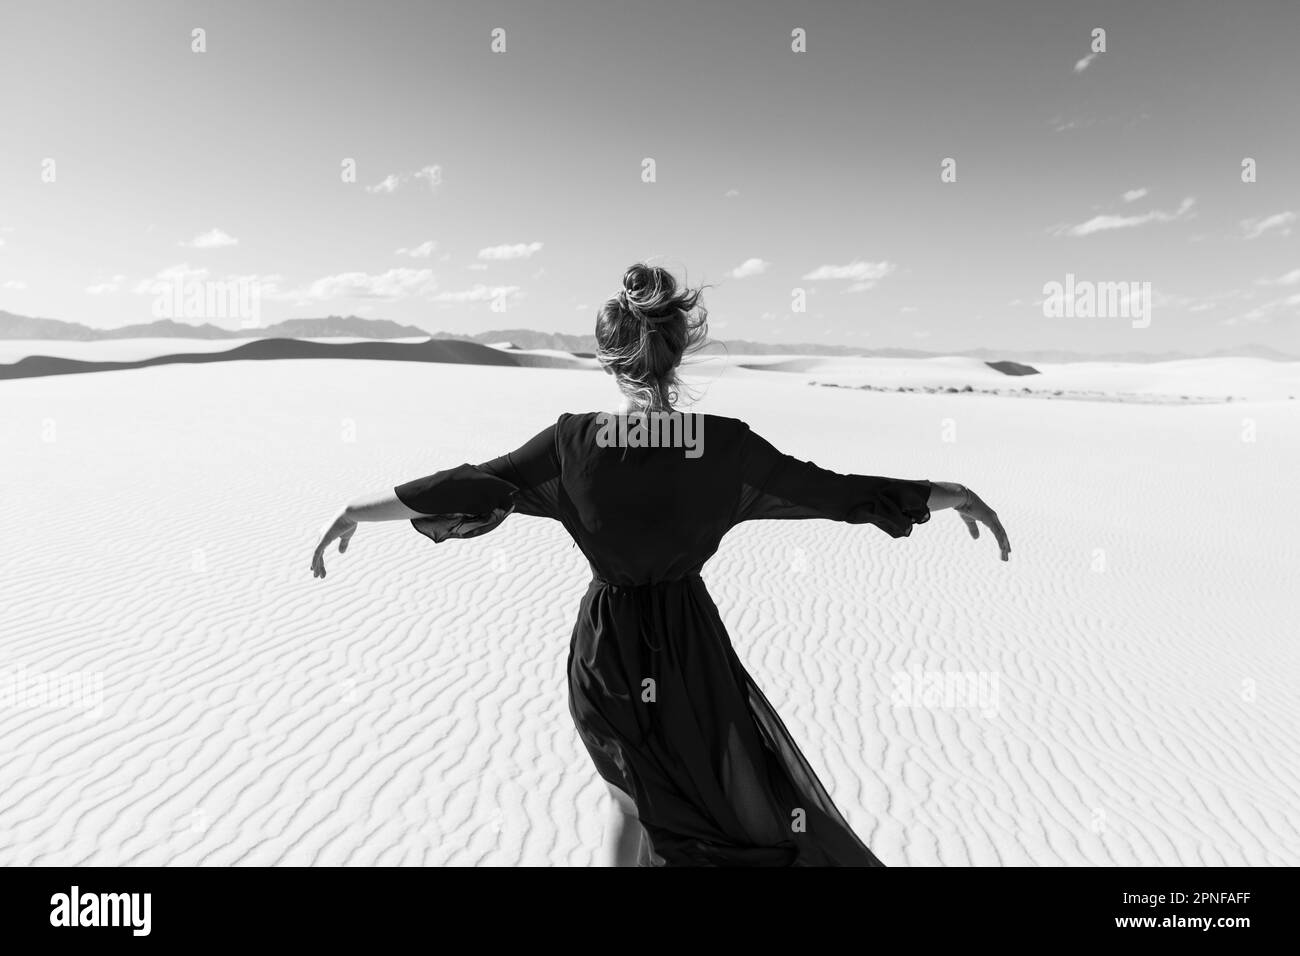 Estados Unidos, Nuevo México, Parque Nacional White Sands, adolescente bailando Foto de stock